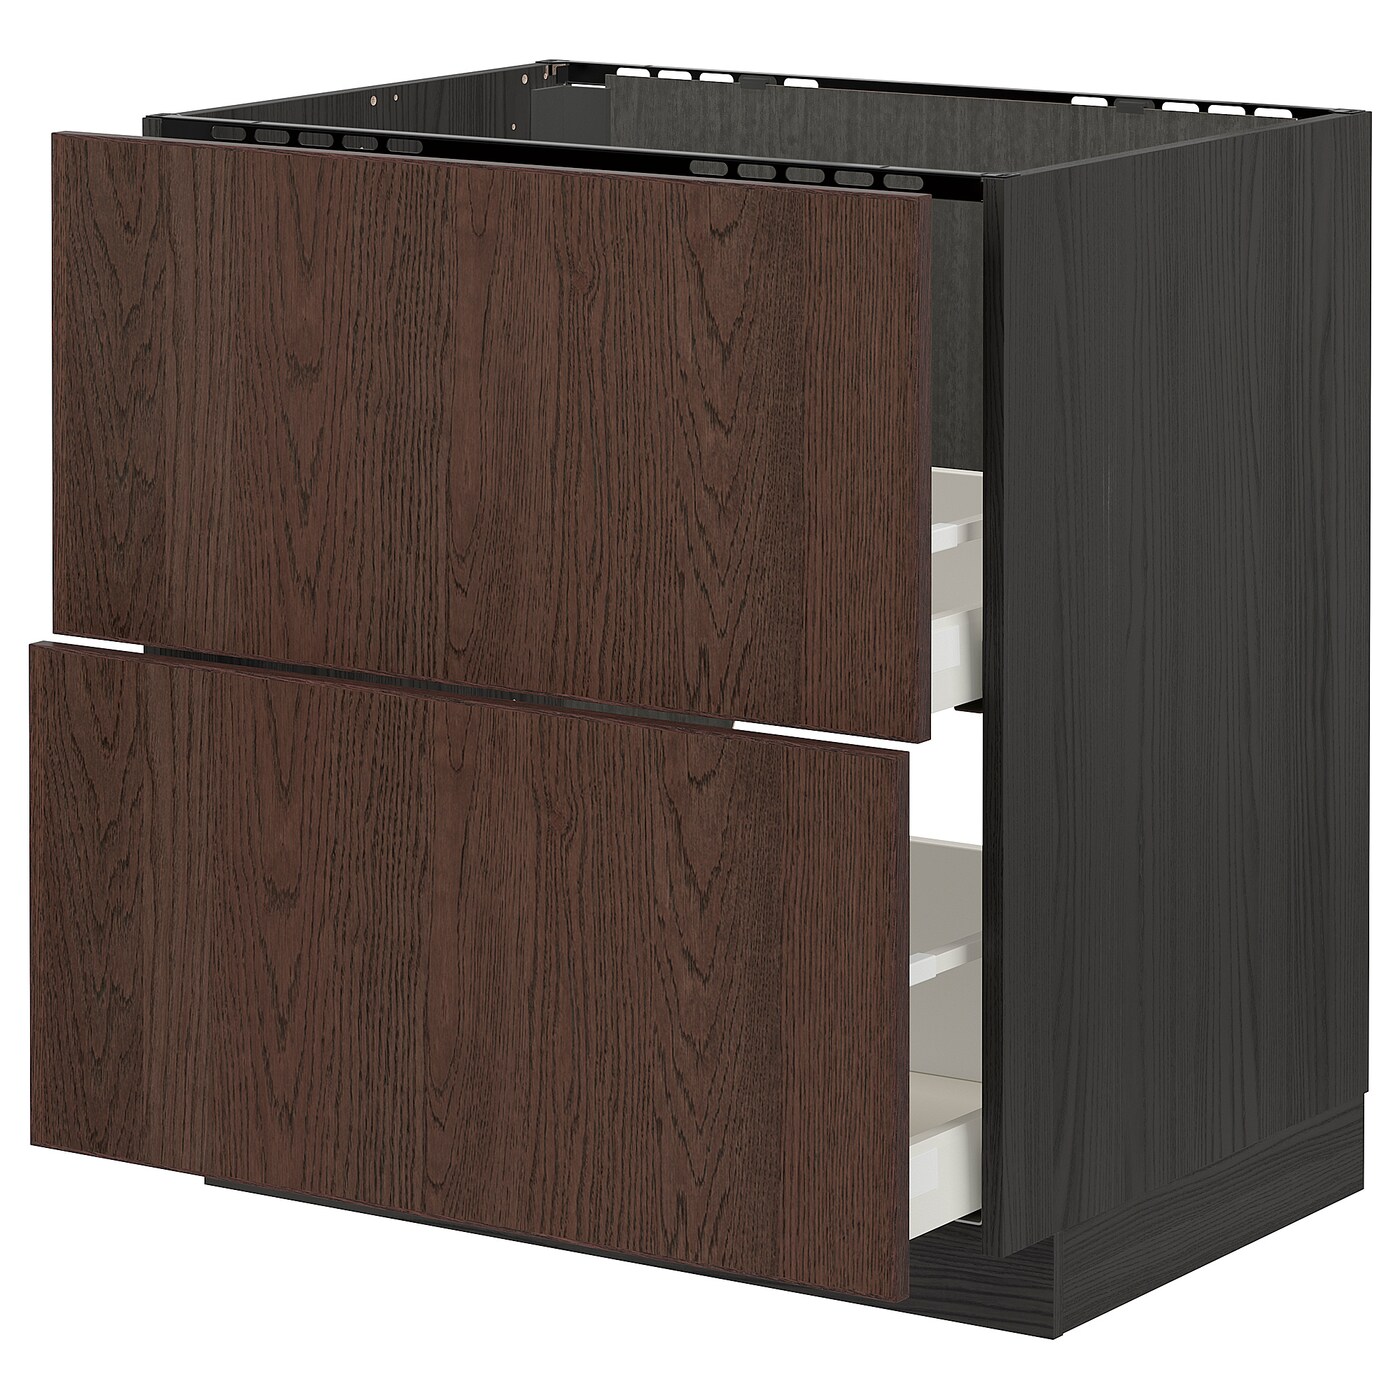 Напольный кухонный шкаф  - IKEA METOD MAXIMERA, 88x62x80см, черный/темно-коричневый, МЕТОД МАКСИМЕРА ИКЕА